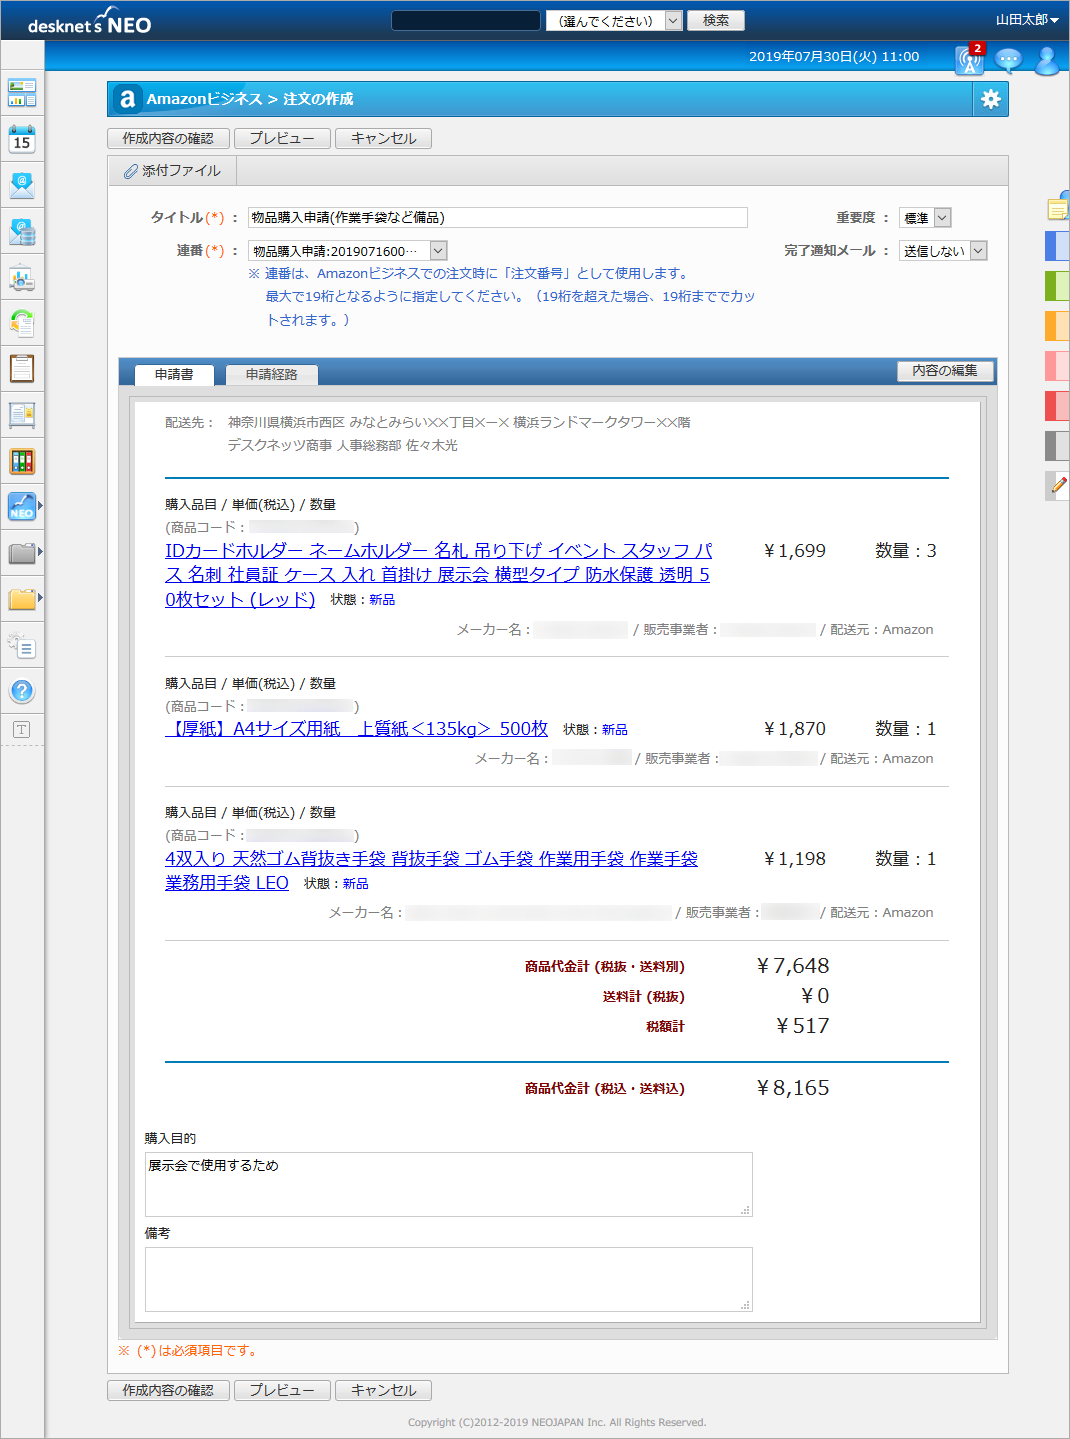 『desknet's NEO』の購入申請書の画面